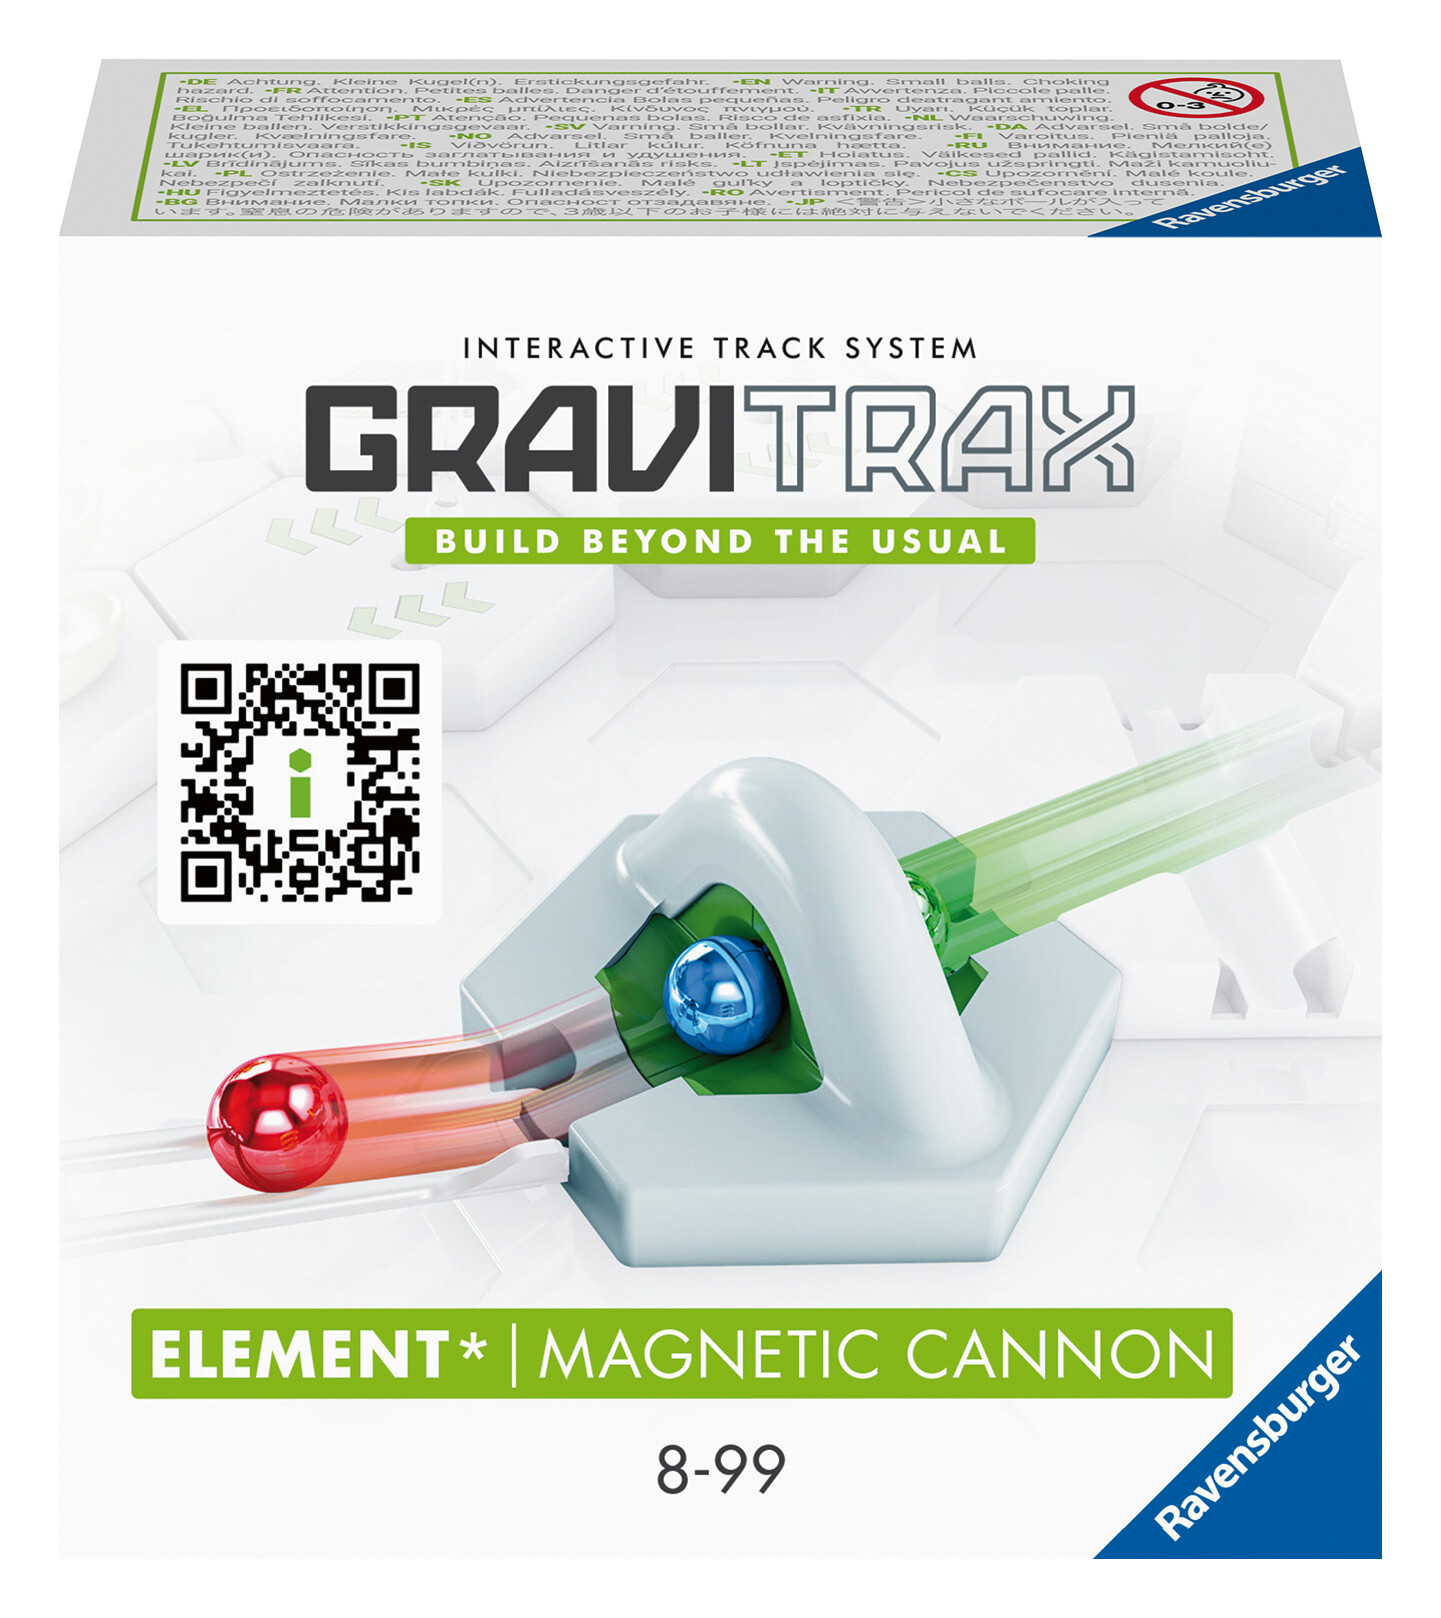 Ravensburger gravitrax magnetic cannon, gioco innovativo ed educativo stem, 8+ anni, accessorio - GRAVITRAX